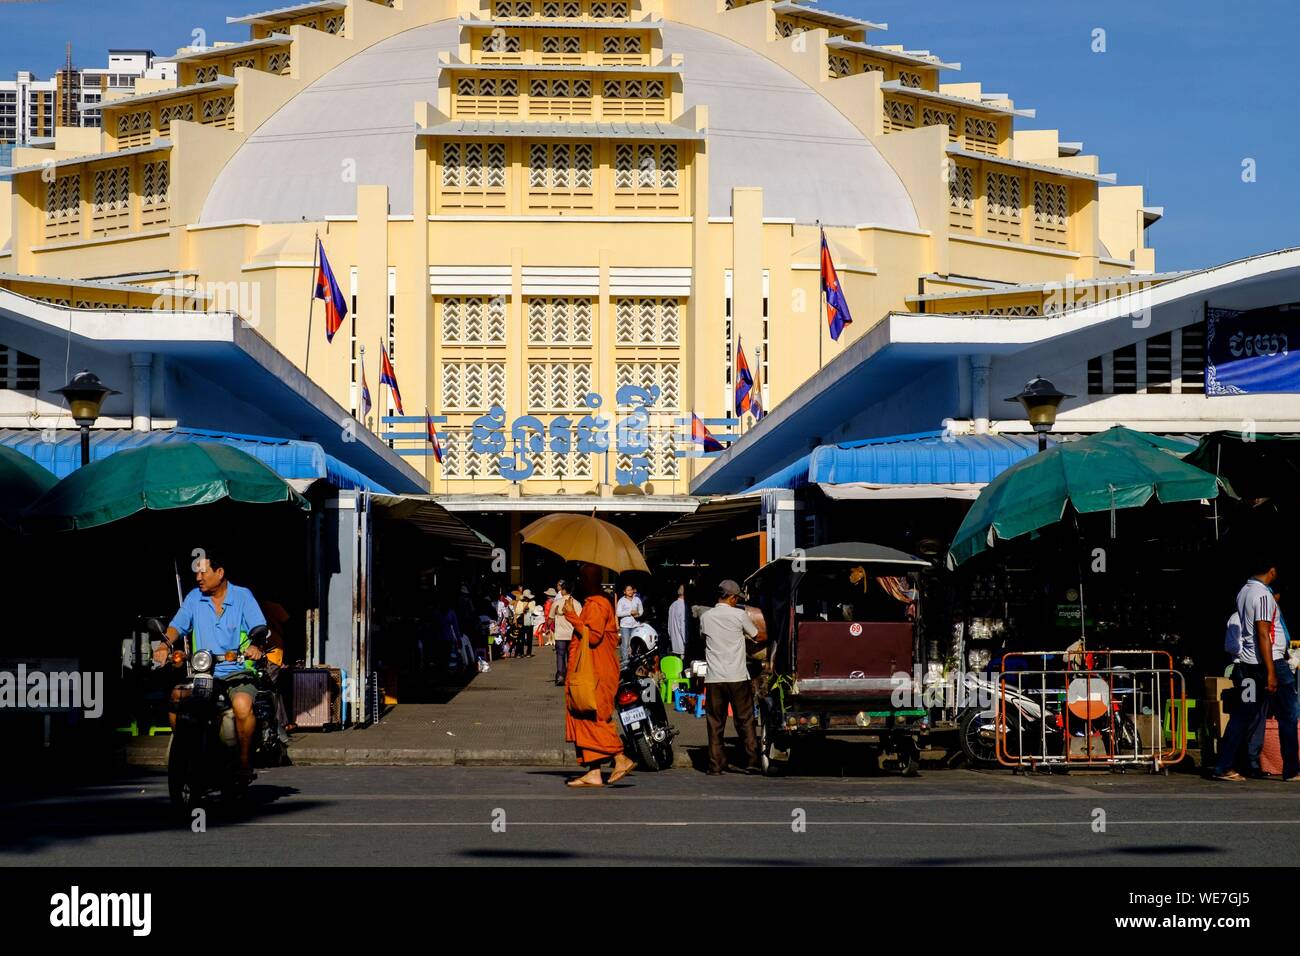 Cambogia, Phnom Penh, il mercato centrale costruito nel 1937 in stile art-deco dall'architetto francese Jean Desbois Foto Stock